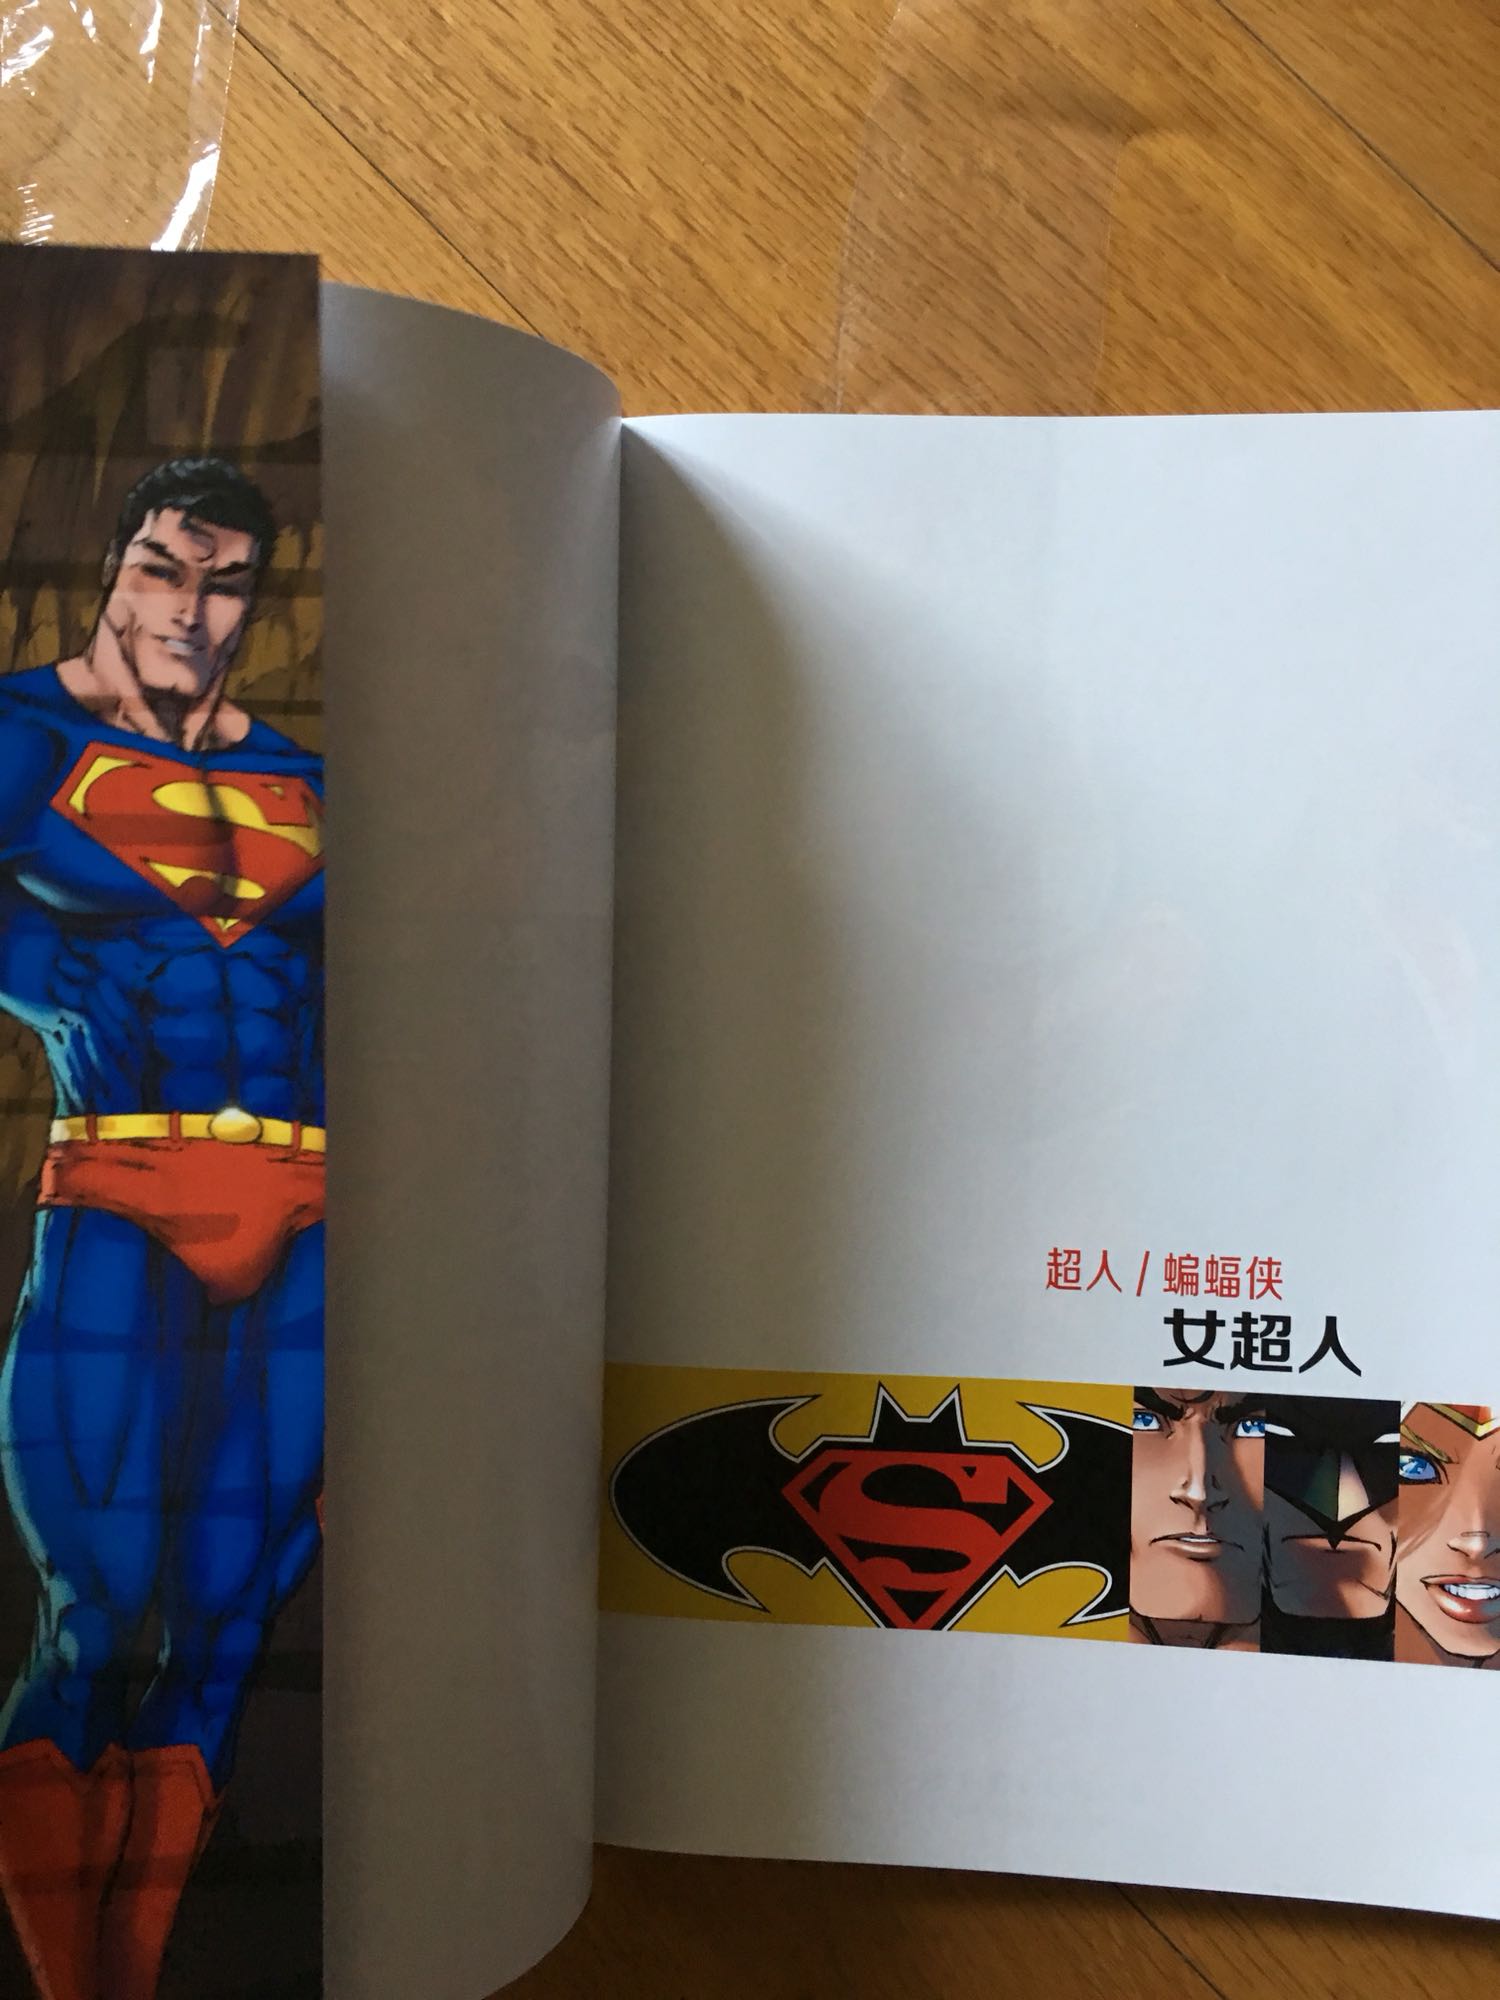 女超人系列很有意思。这本书是超人系列的分支，比较有意思